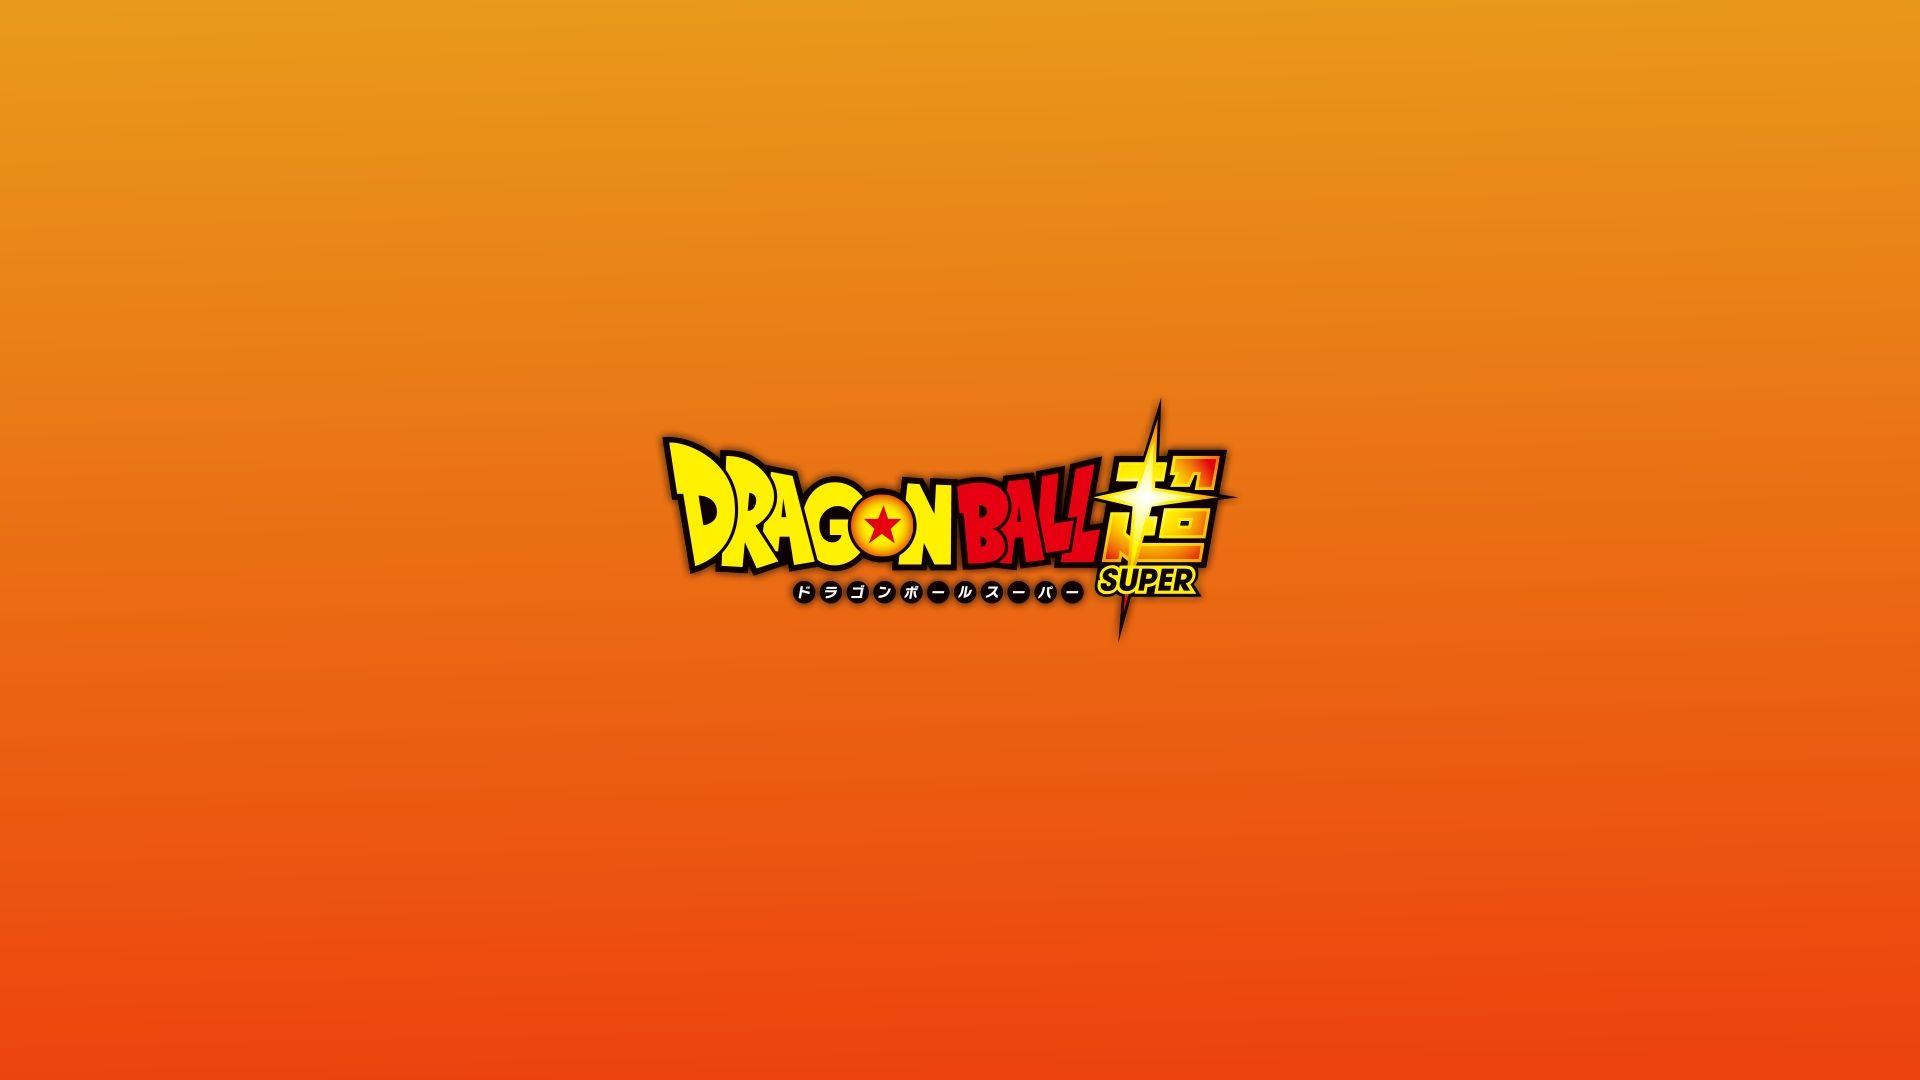 Dragon Ball Super Logo - Dragon Ball Super Logo Wallpaper | Wallpaper HD 1080p | Pinterest ...